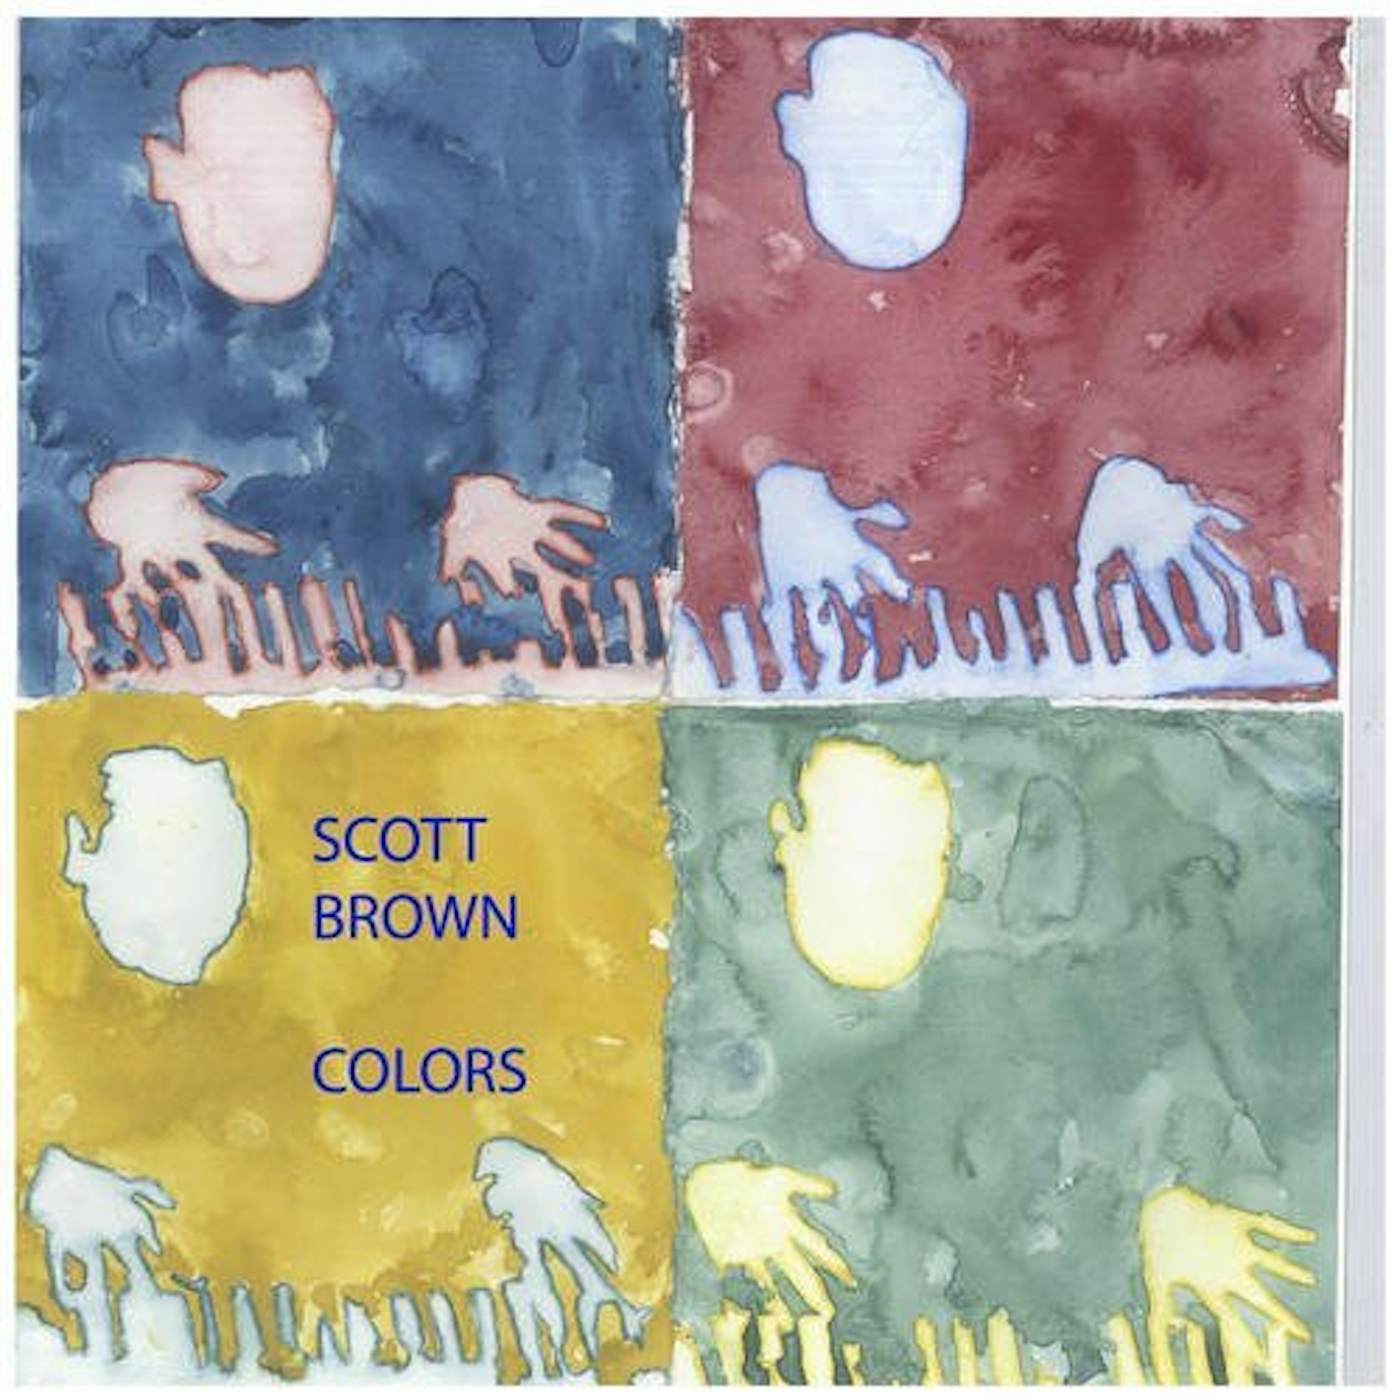 Scott Brown COLORS CD